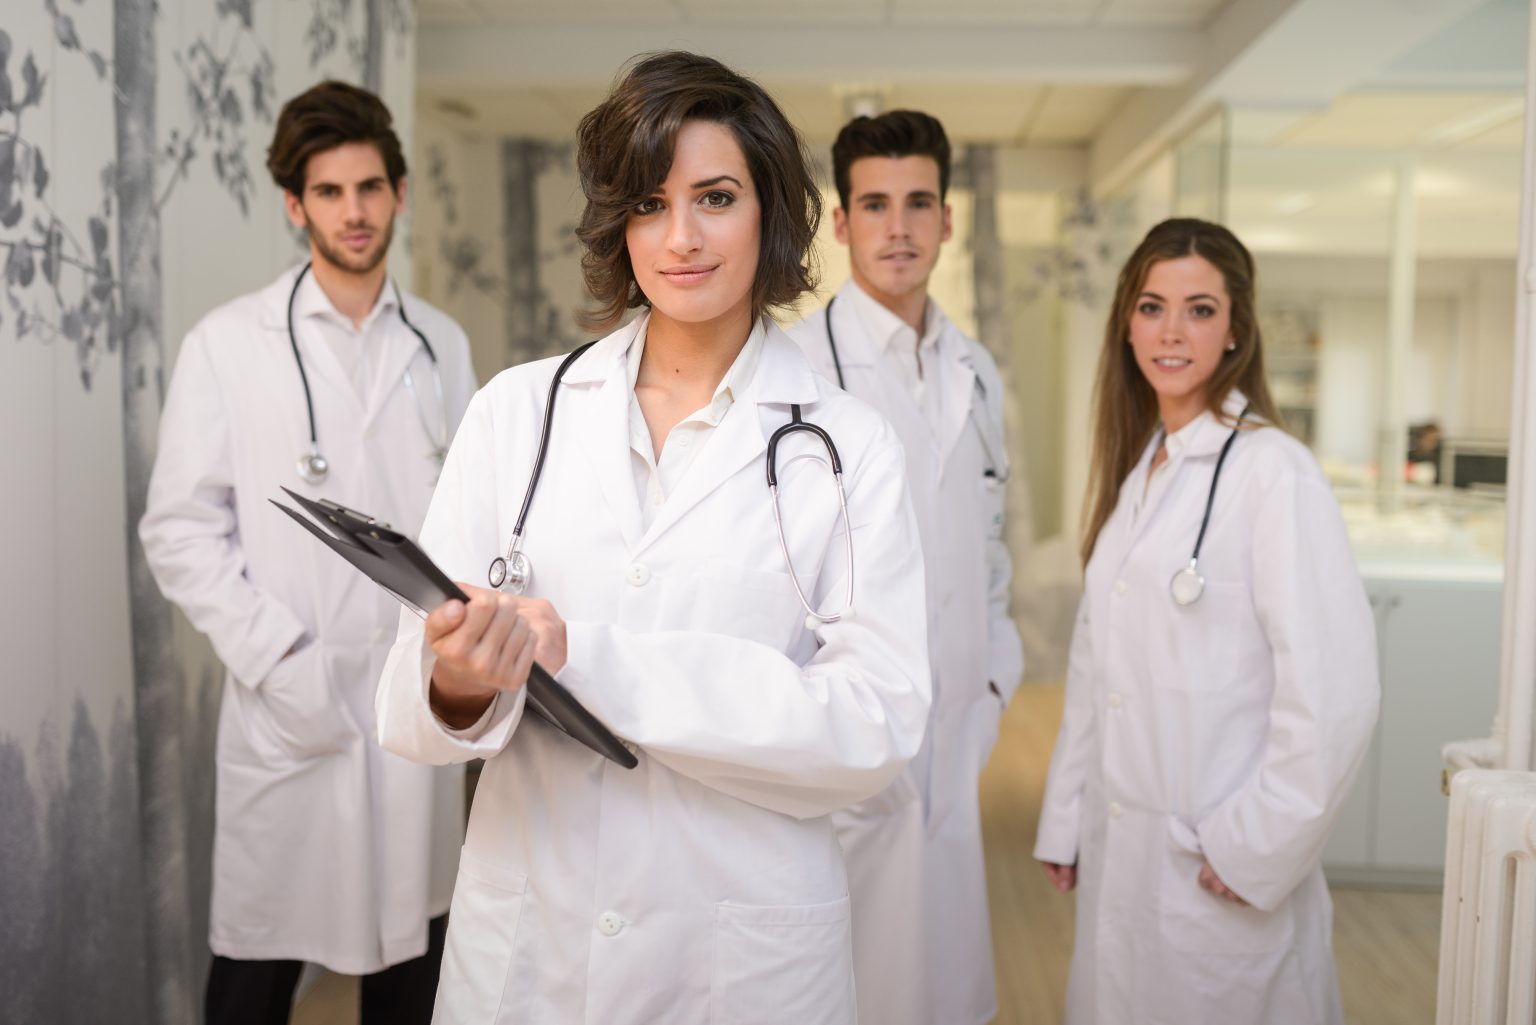 Médicos jóvenes advierten de los riesgos que se plantean a raíz de la pandemia para la formación médica profesional